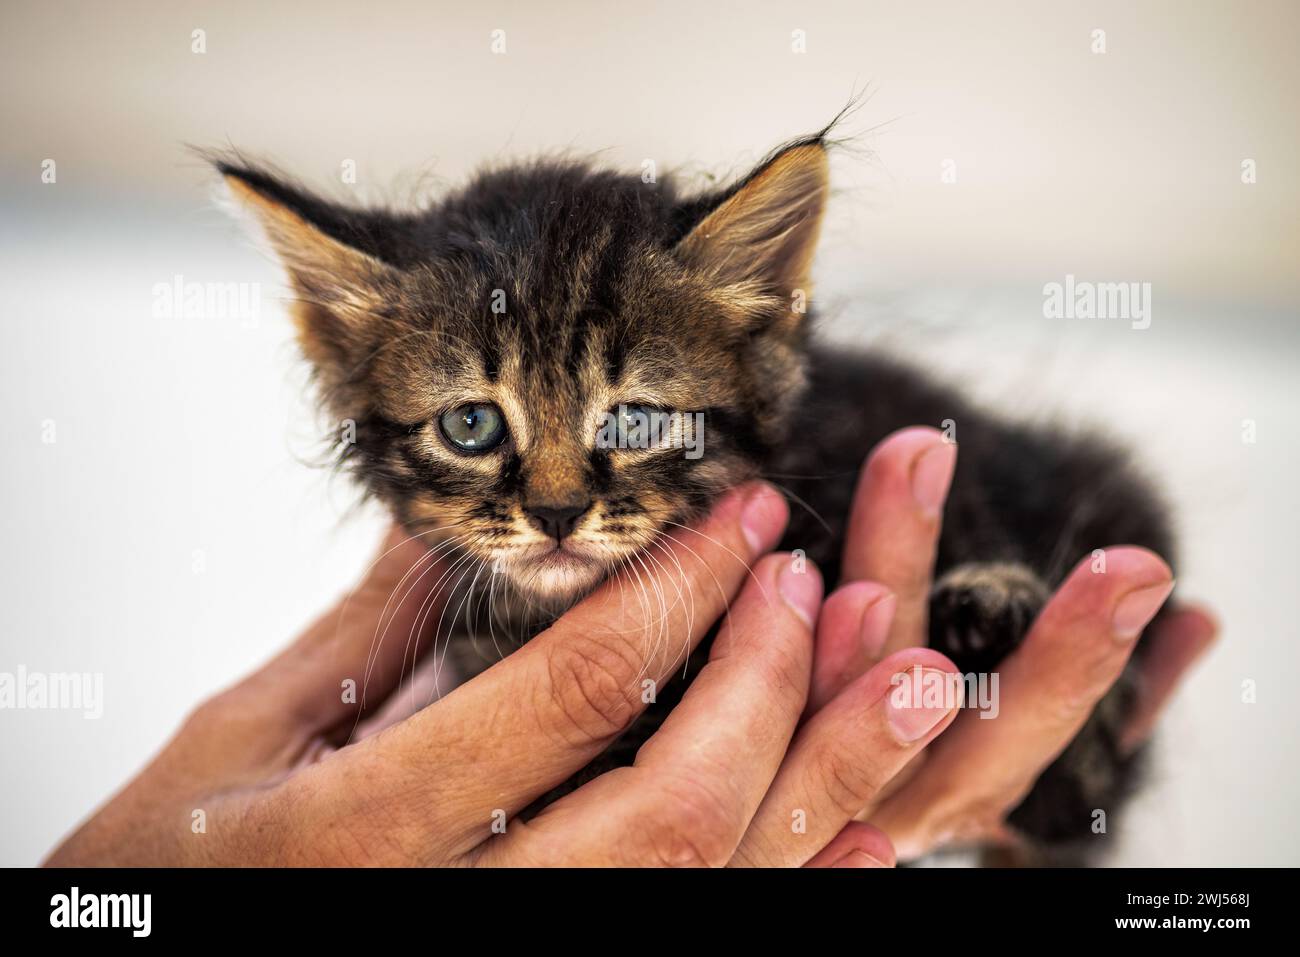 Pauvre petit chaton tabby dans des mains humaines Banque D'Images